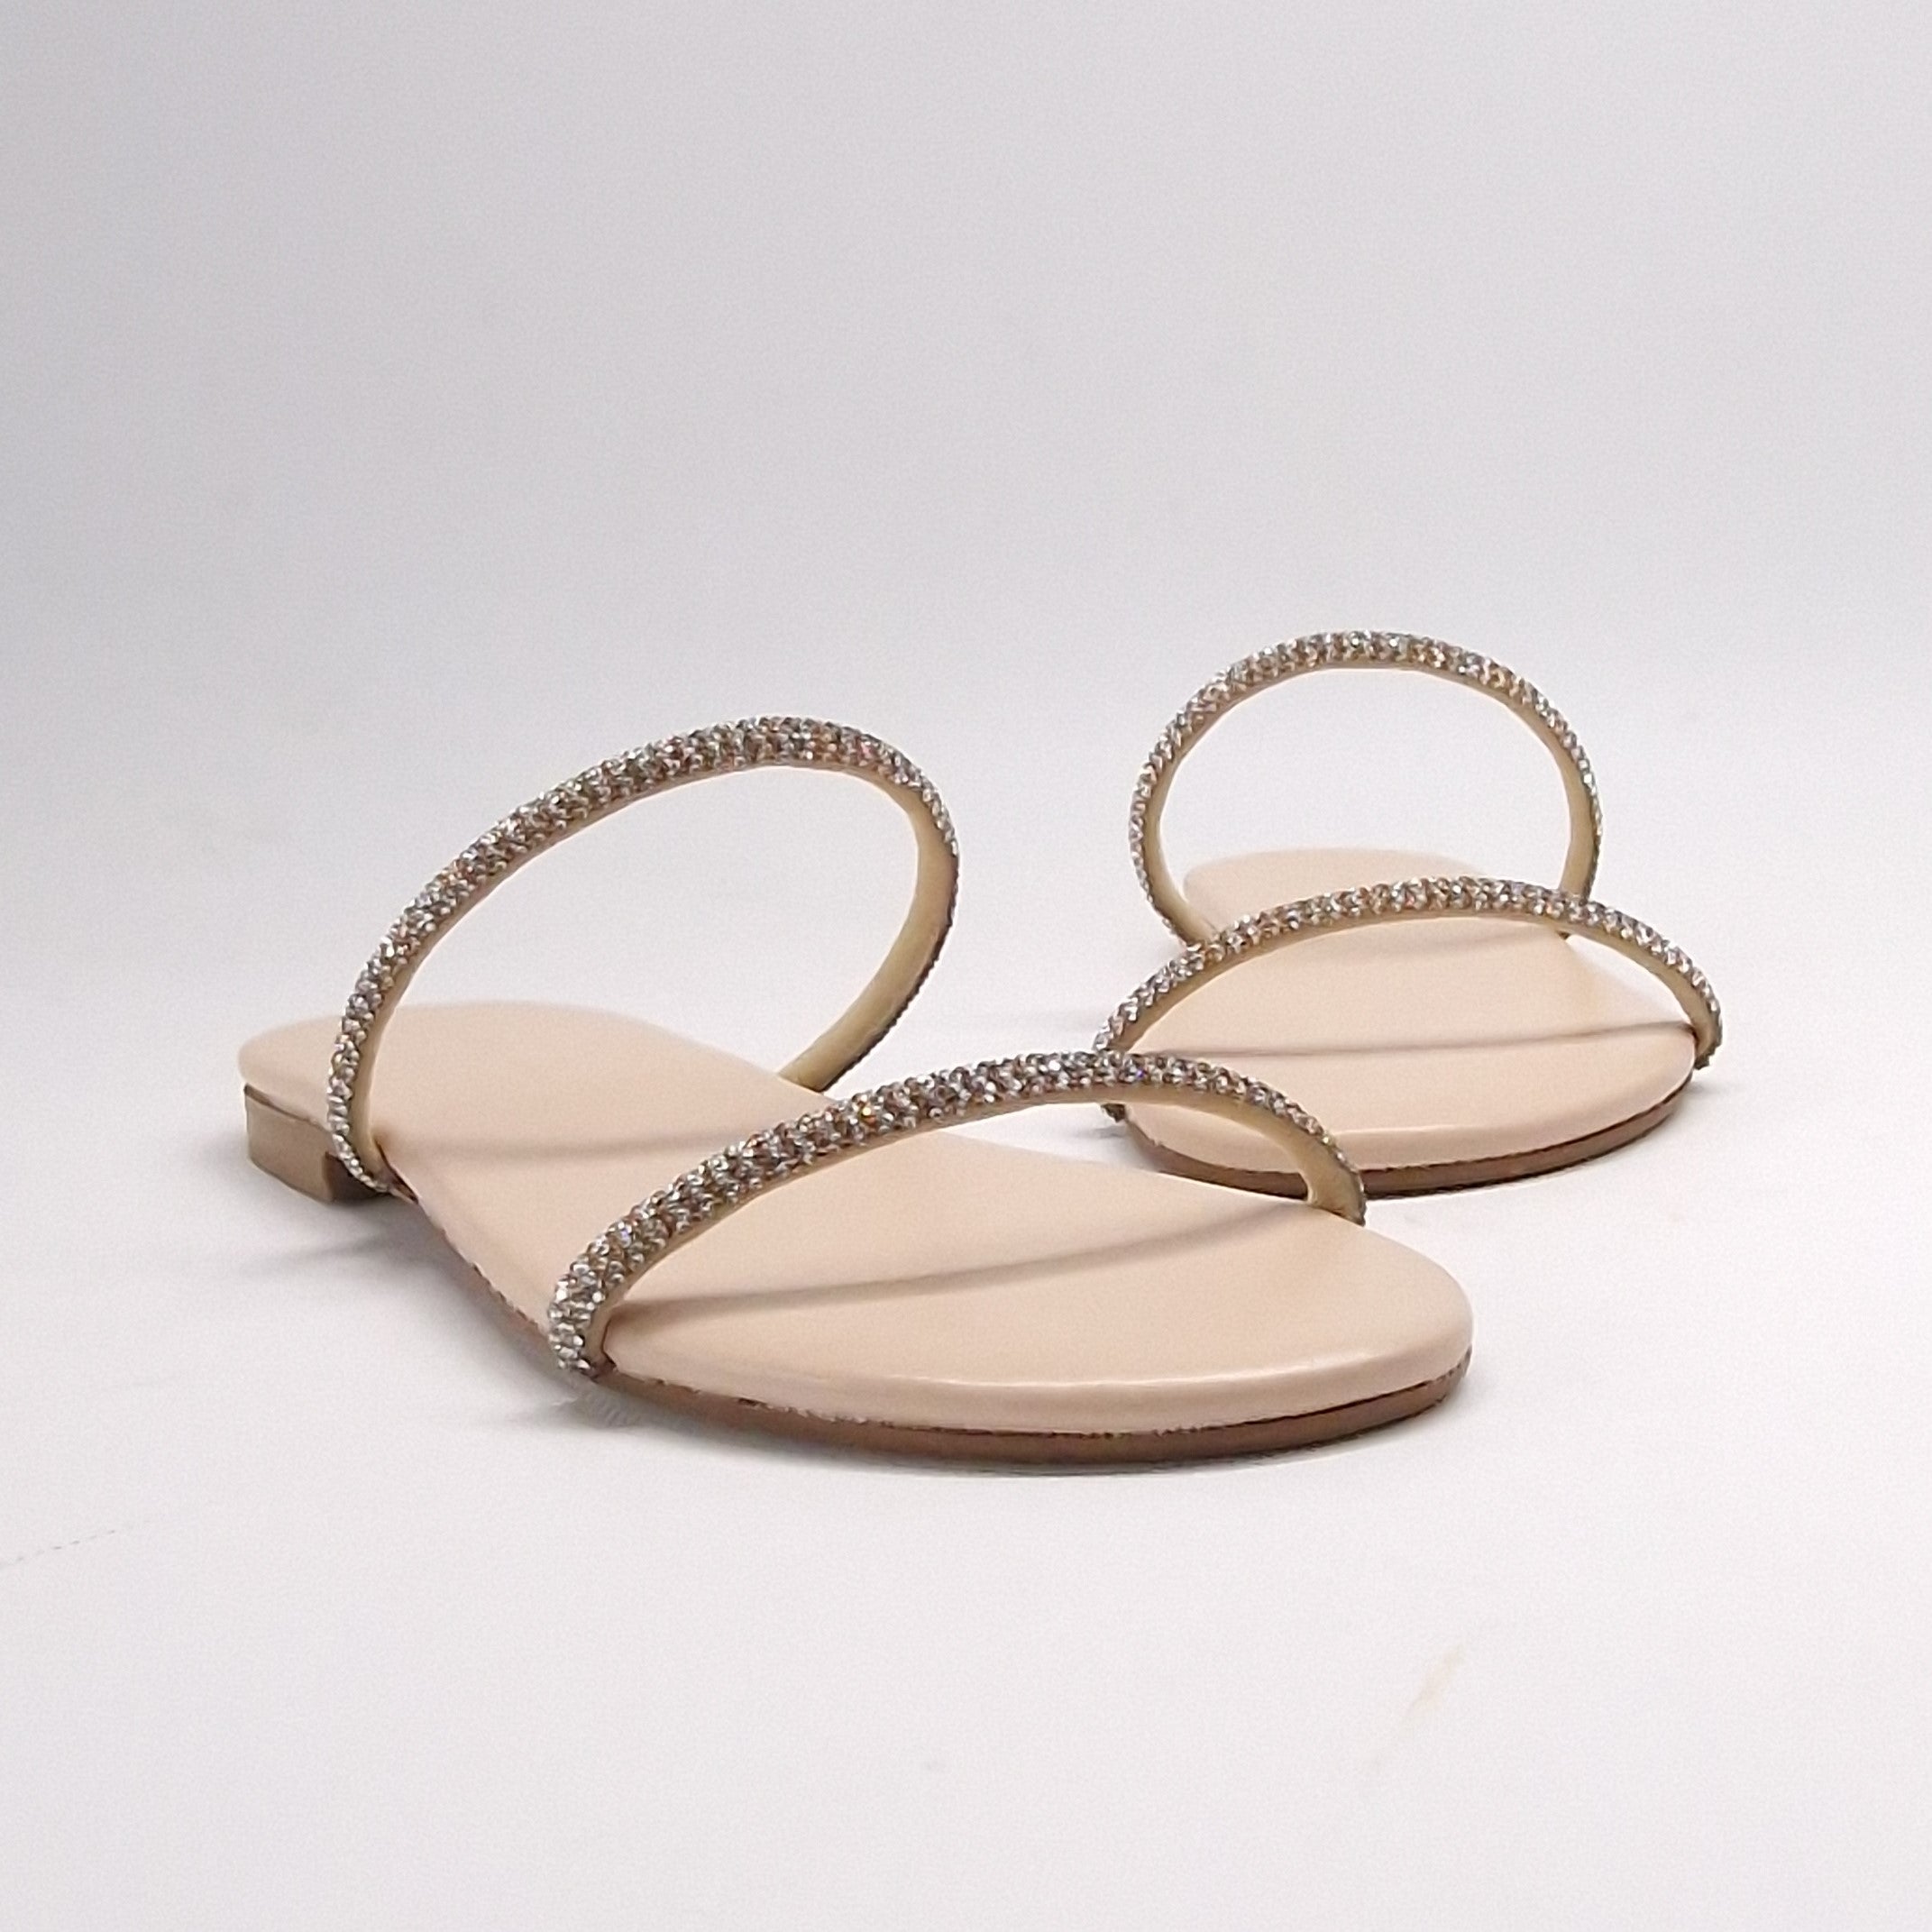 Sandalo DONNA piatto cristalli colore platino | Art. DAFNE